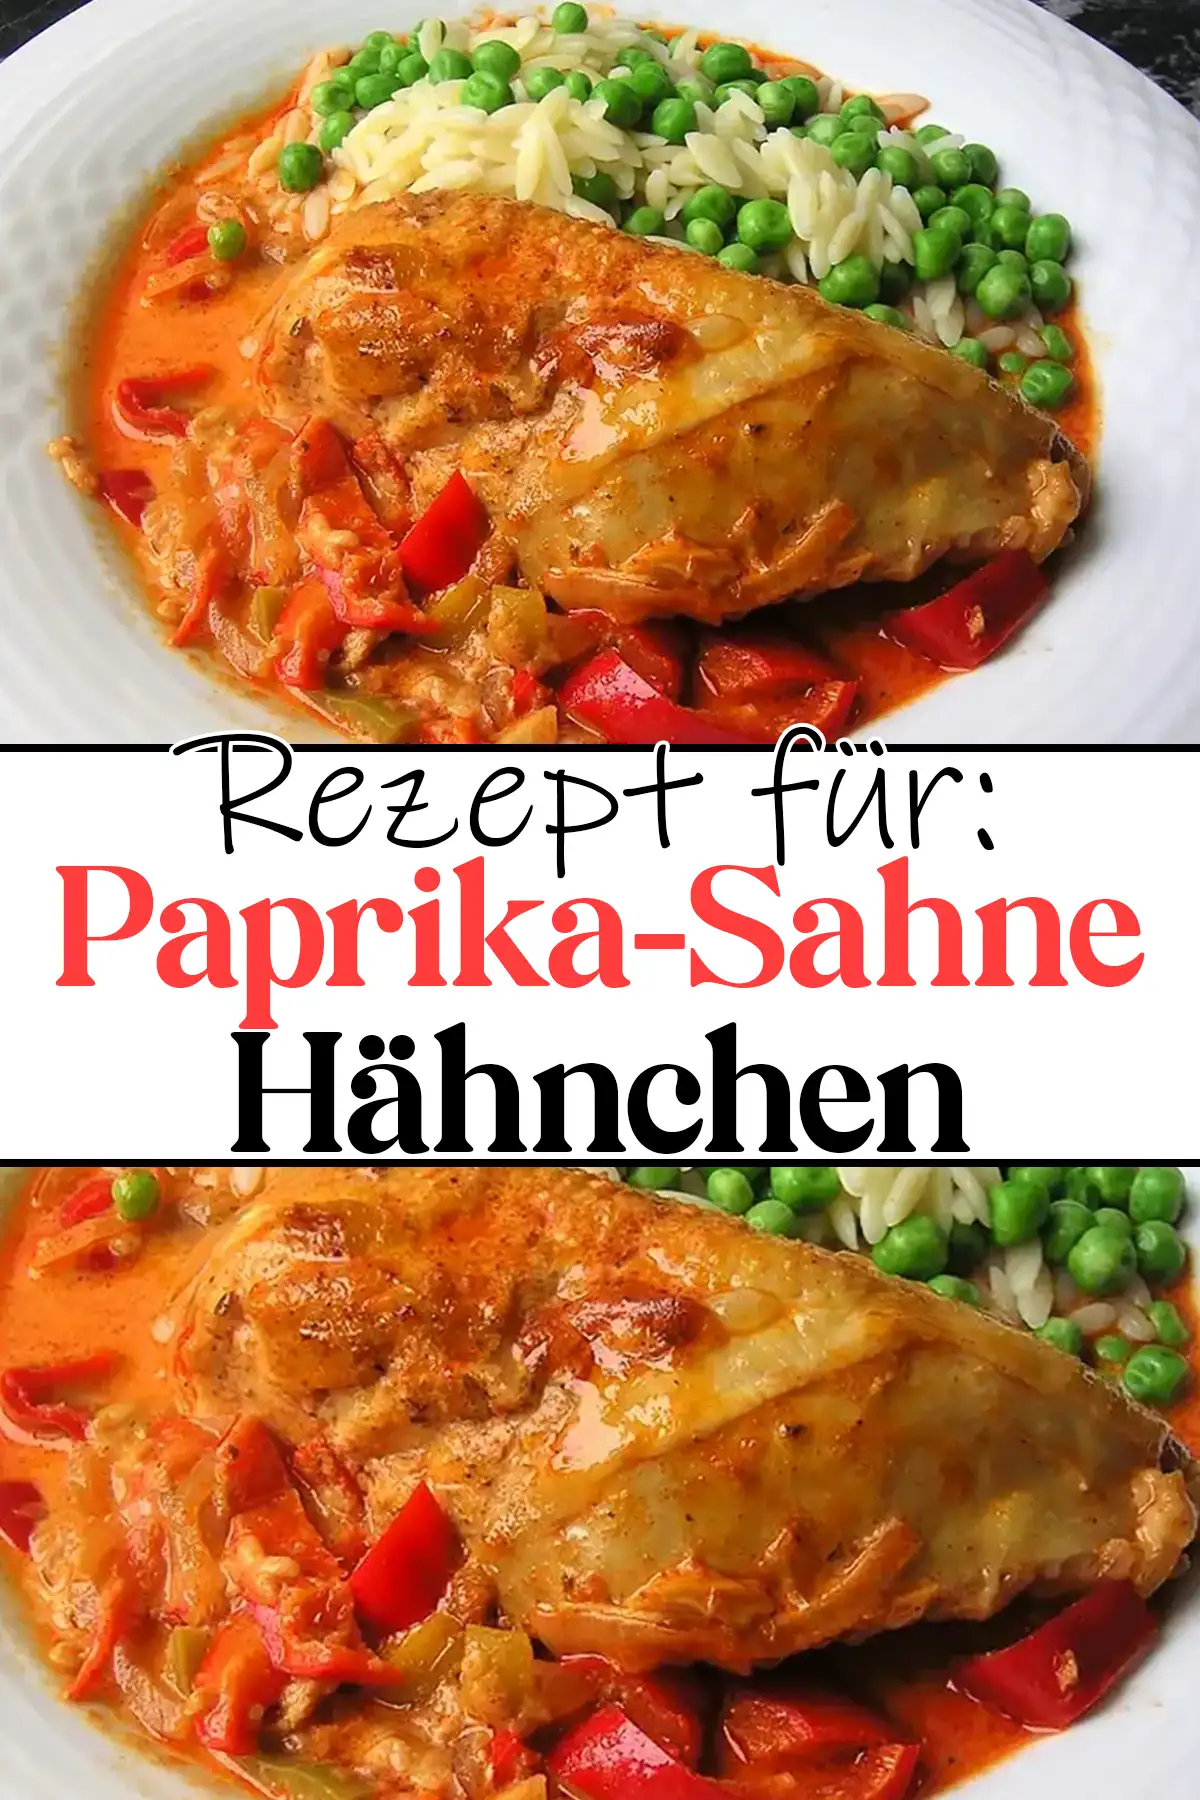 Paprika-Sahne-Hähnchen Rezept - Einfach und Lecker